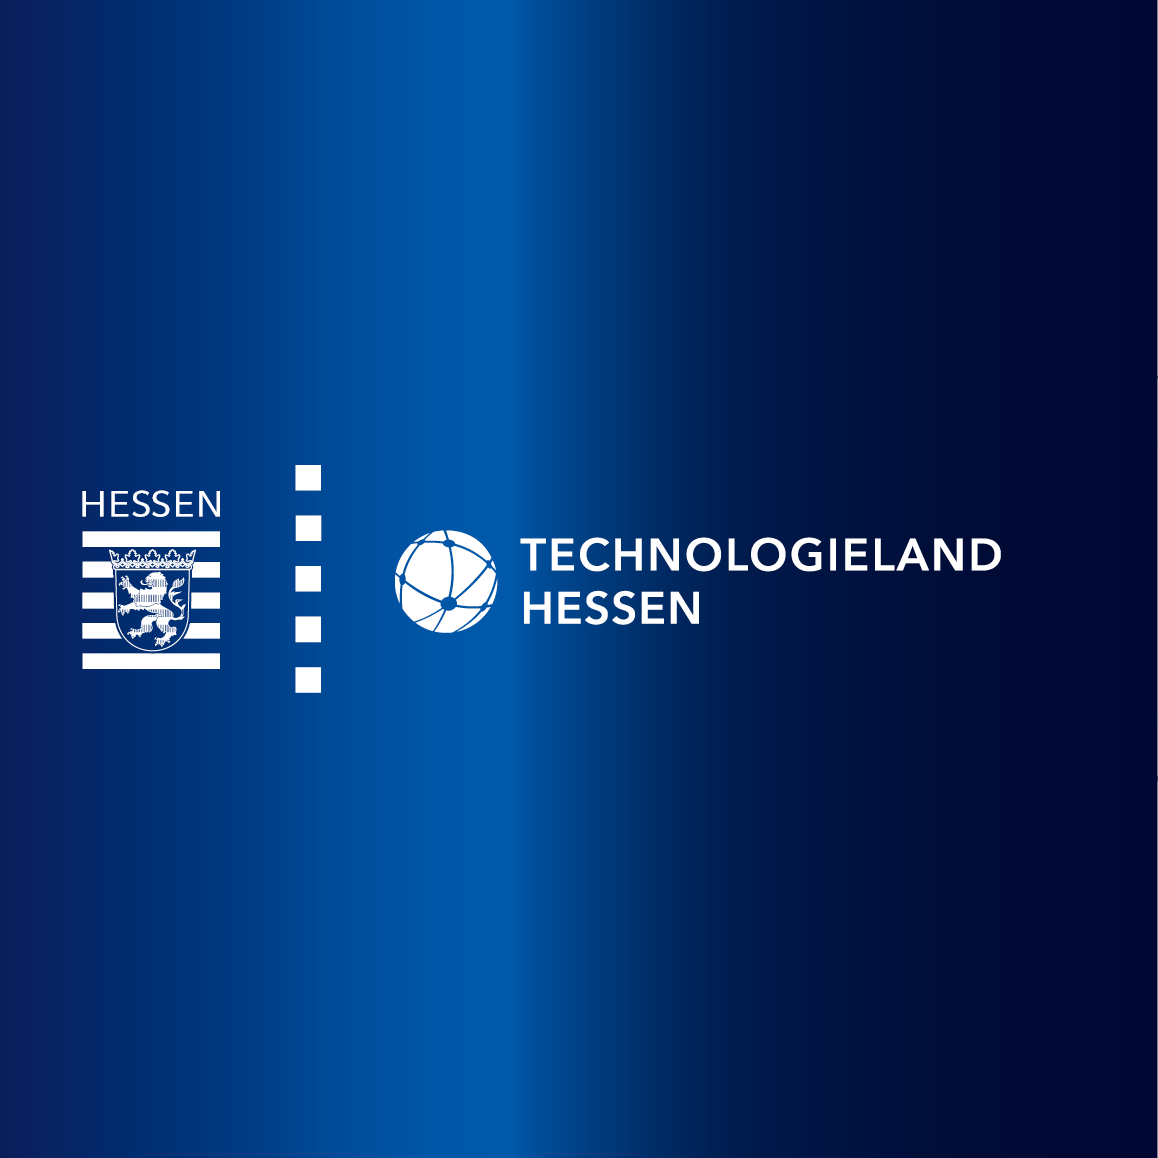 (c) Technologieland-hessen.de